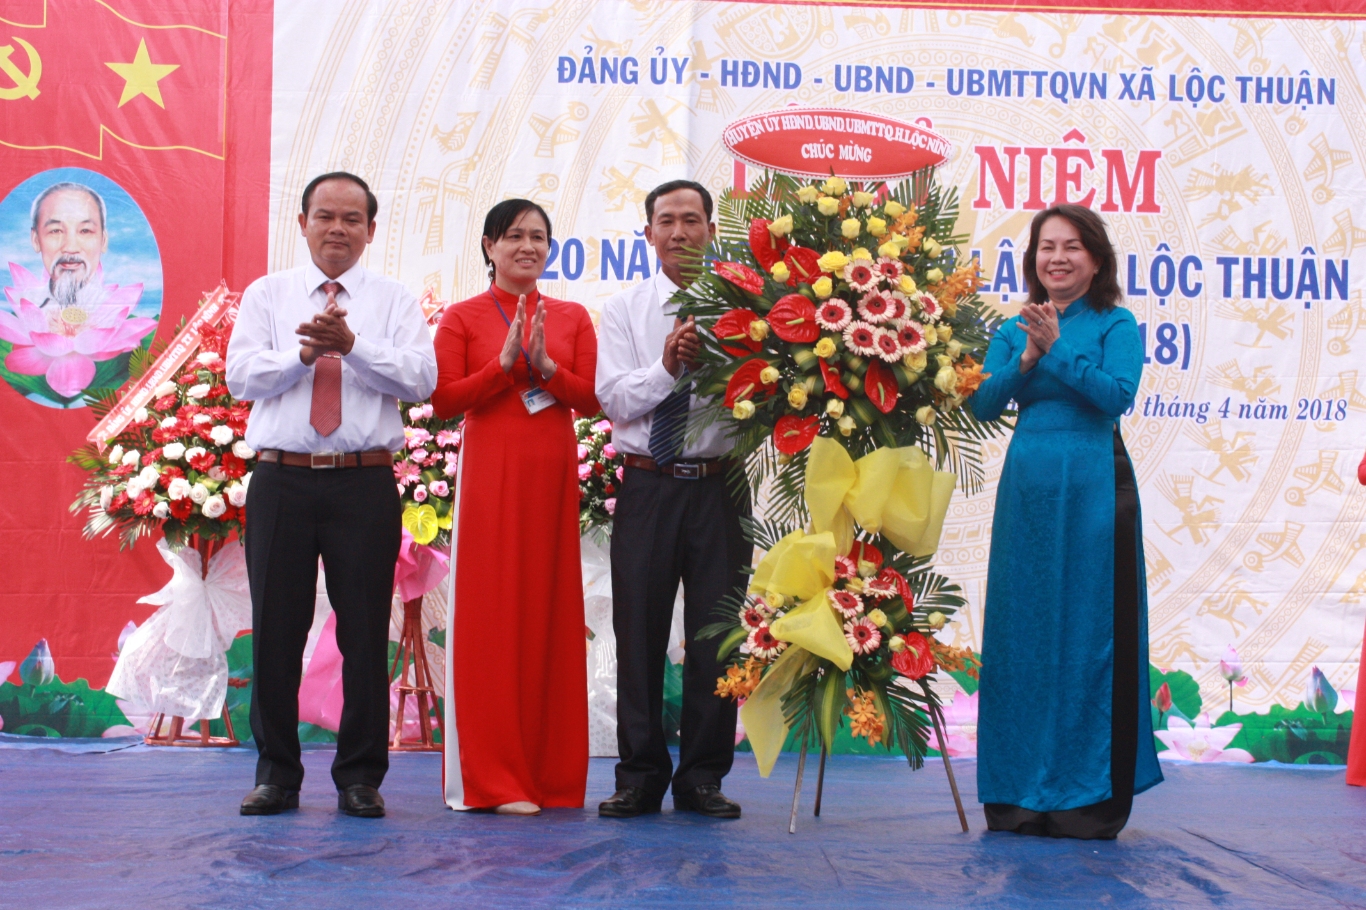 Xã Lộc Thuận, huyện Lộc Ninh tổ chức kỷ niệm 20 năm tái lập (20/4/1998-20/4/2018)